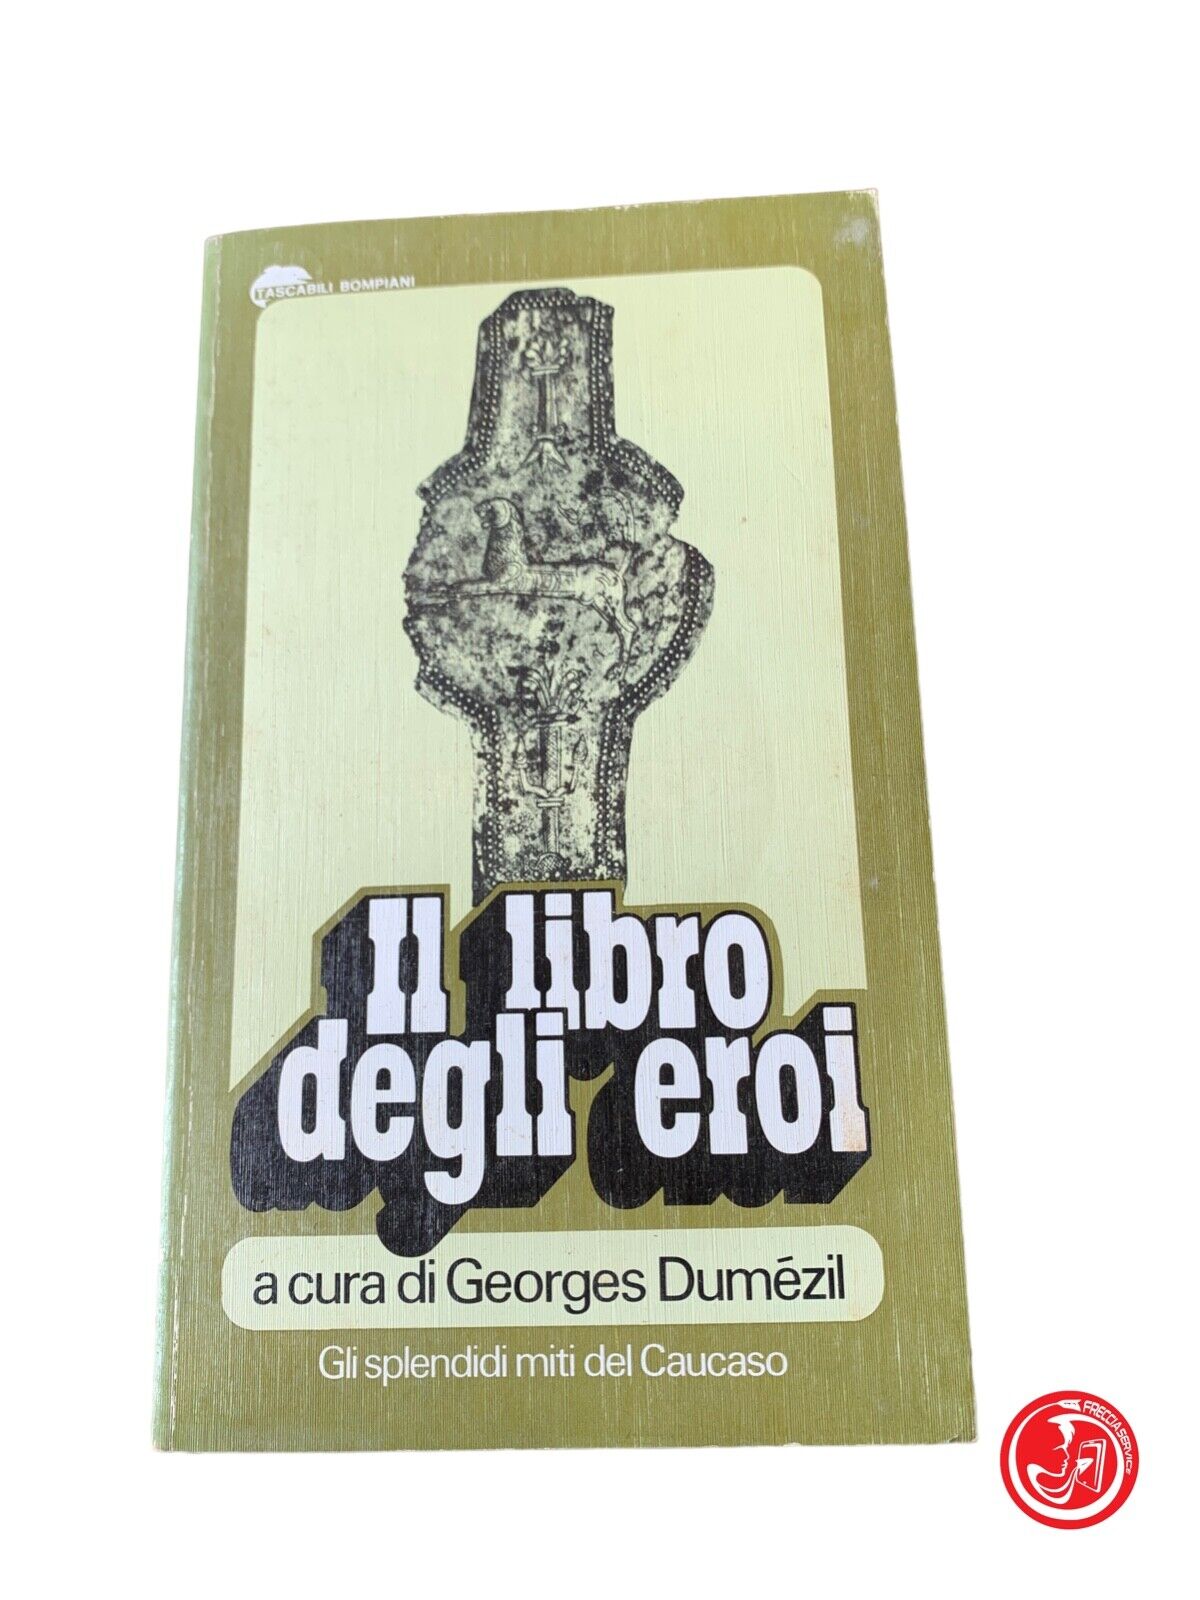 Il libro degli eroi - Georges Dumézil - Bompiani 1976